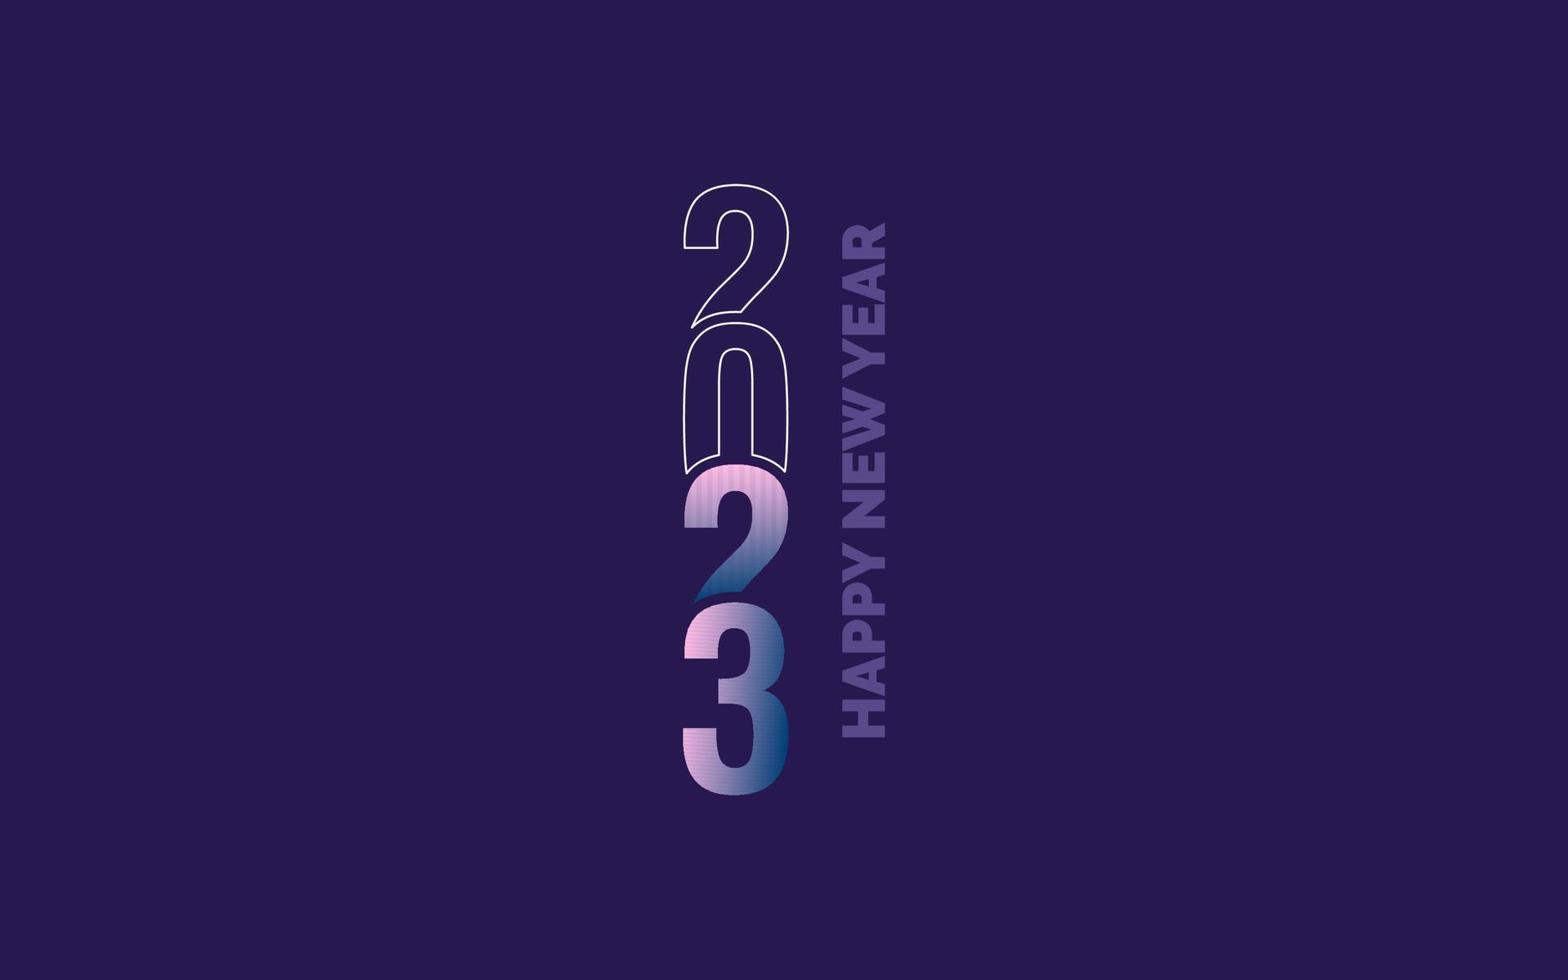 neues Typografie-Design für das Jahr 2023. 2023-Zahlen-Logo-Illustration vektor